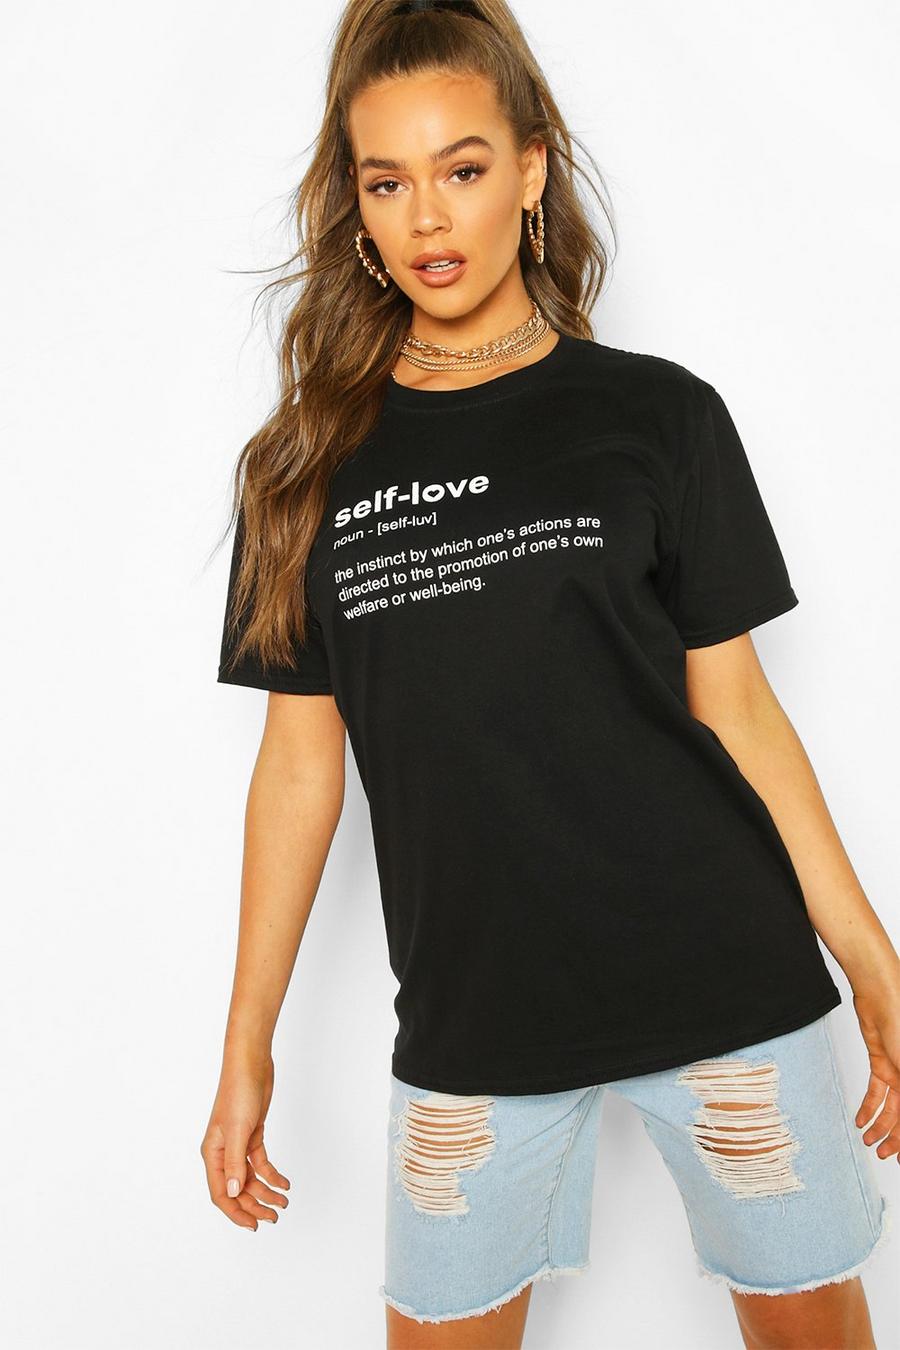 Camiseta con eslogan “Self Love” image number 1